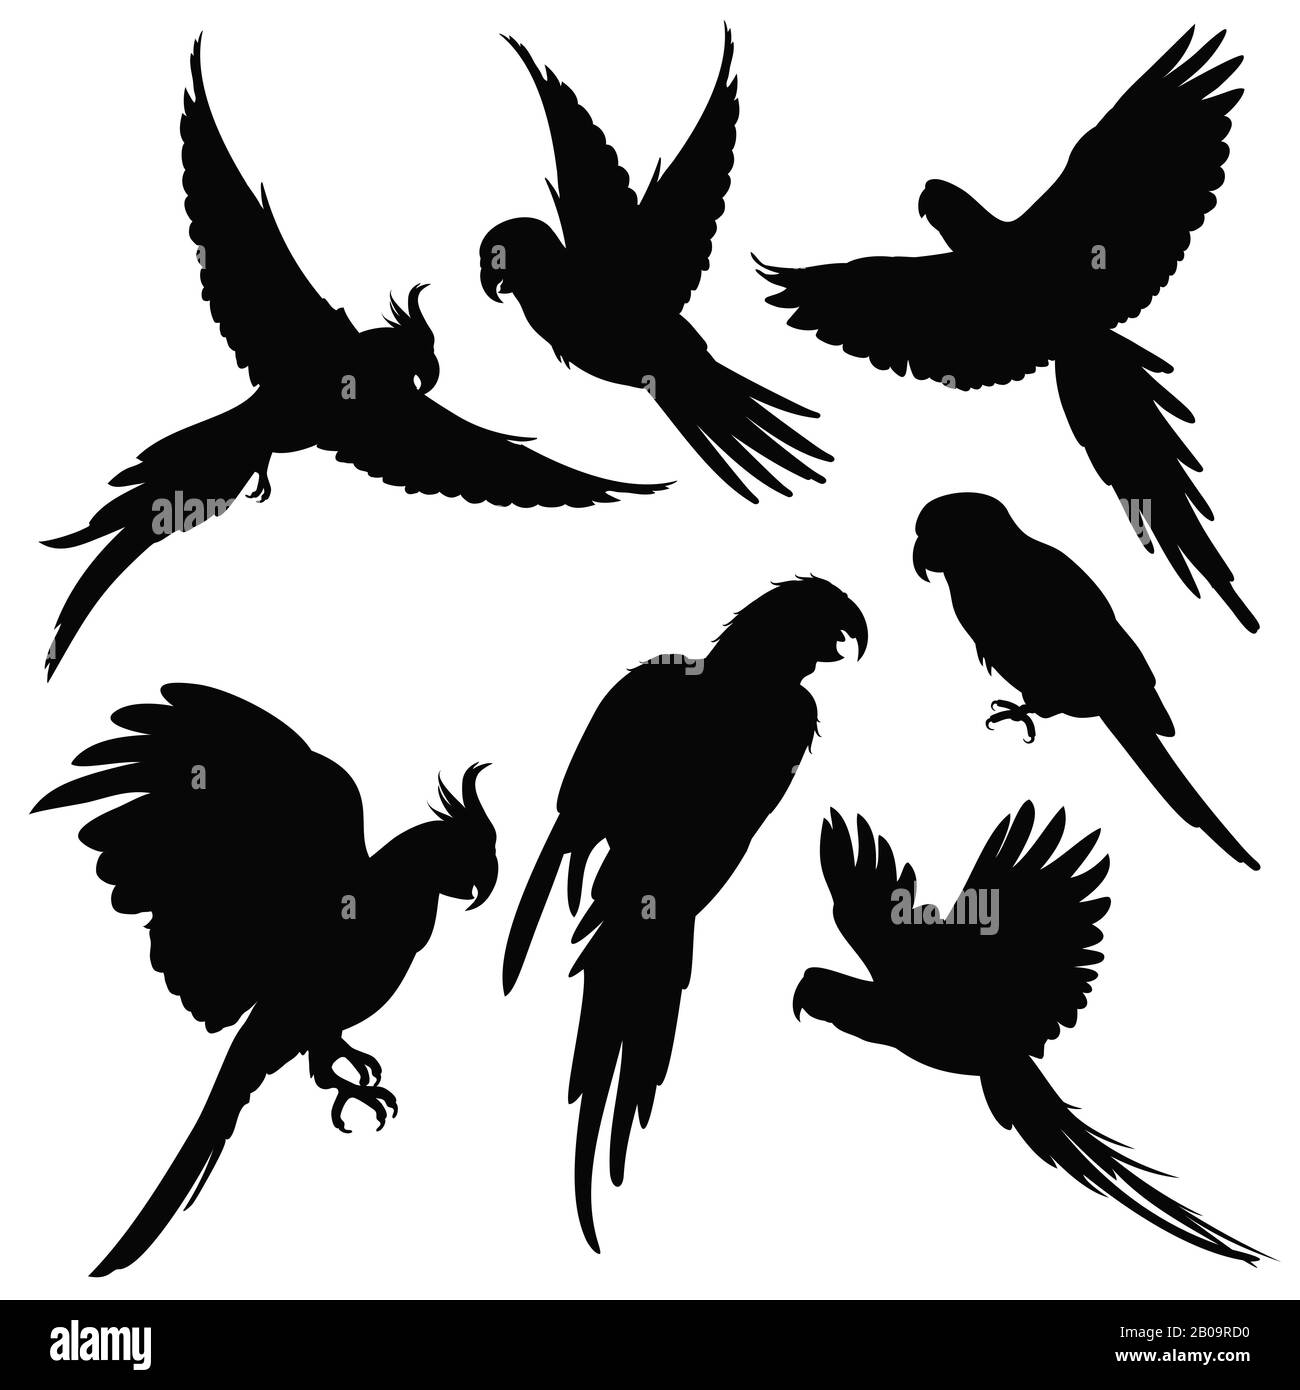 Vektor-Papageien, amazonas-dschungel-Vogel-Silhouetten isoliert auf Weiß. Schwarze Silhouettenpapageien, Illustration exotischer Vogelpapagei Stock Vektor